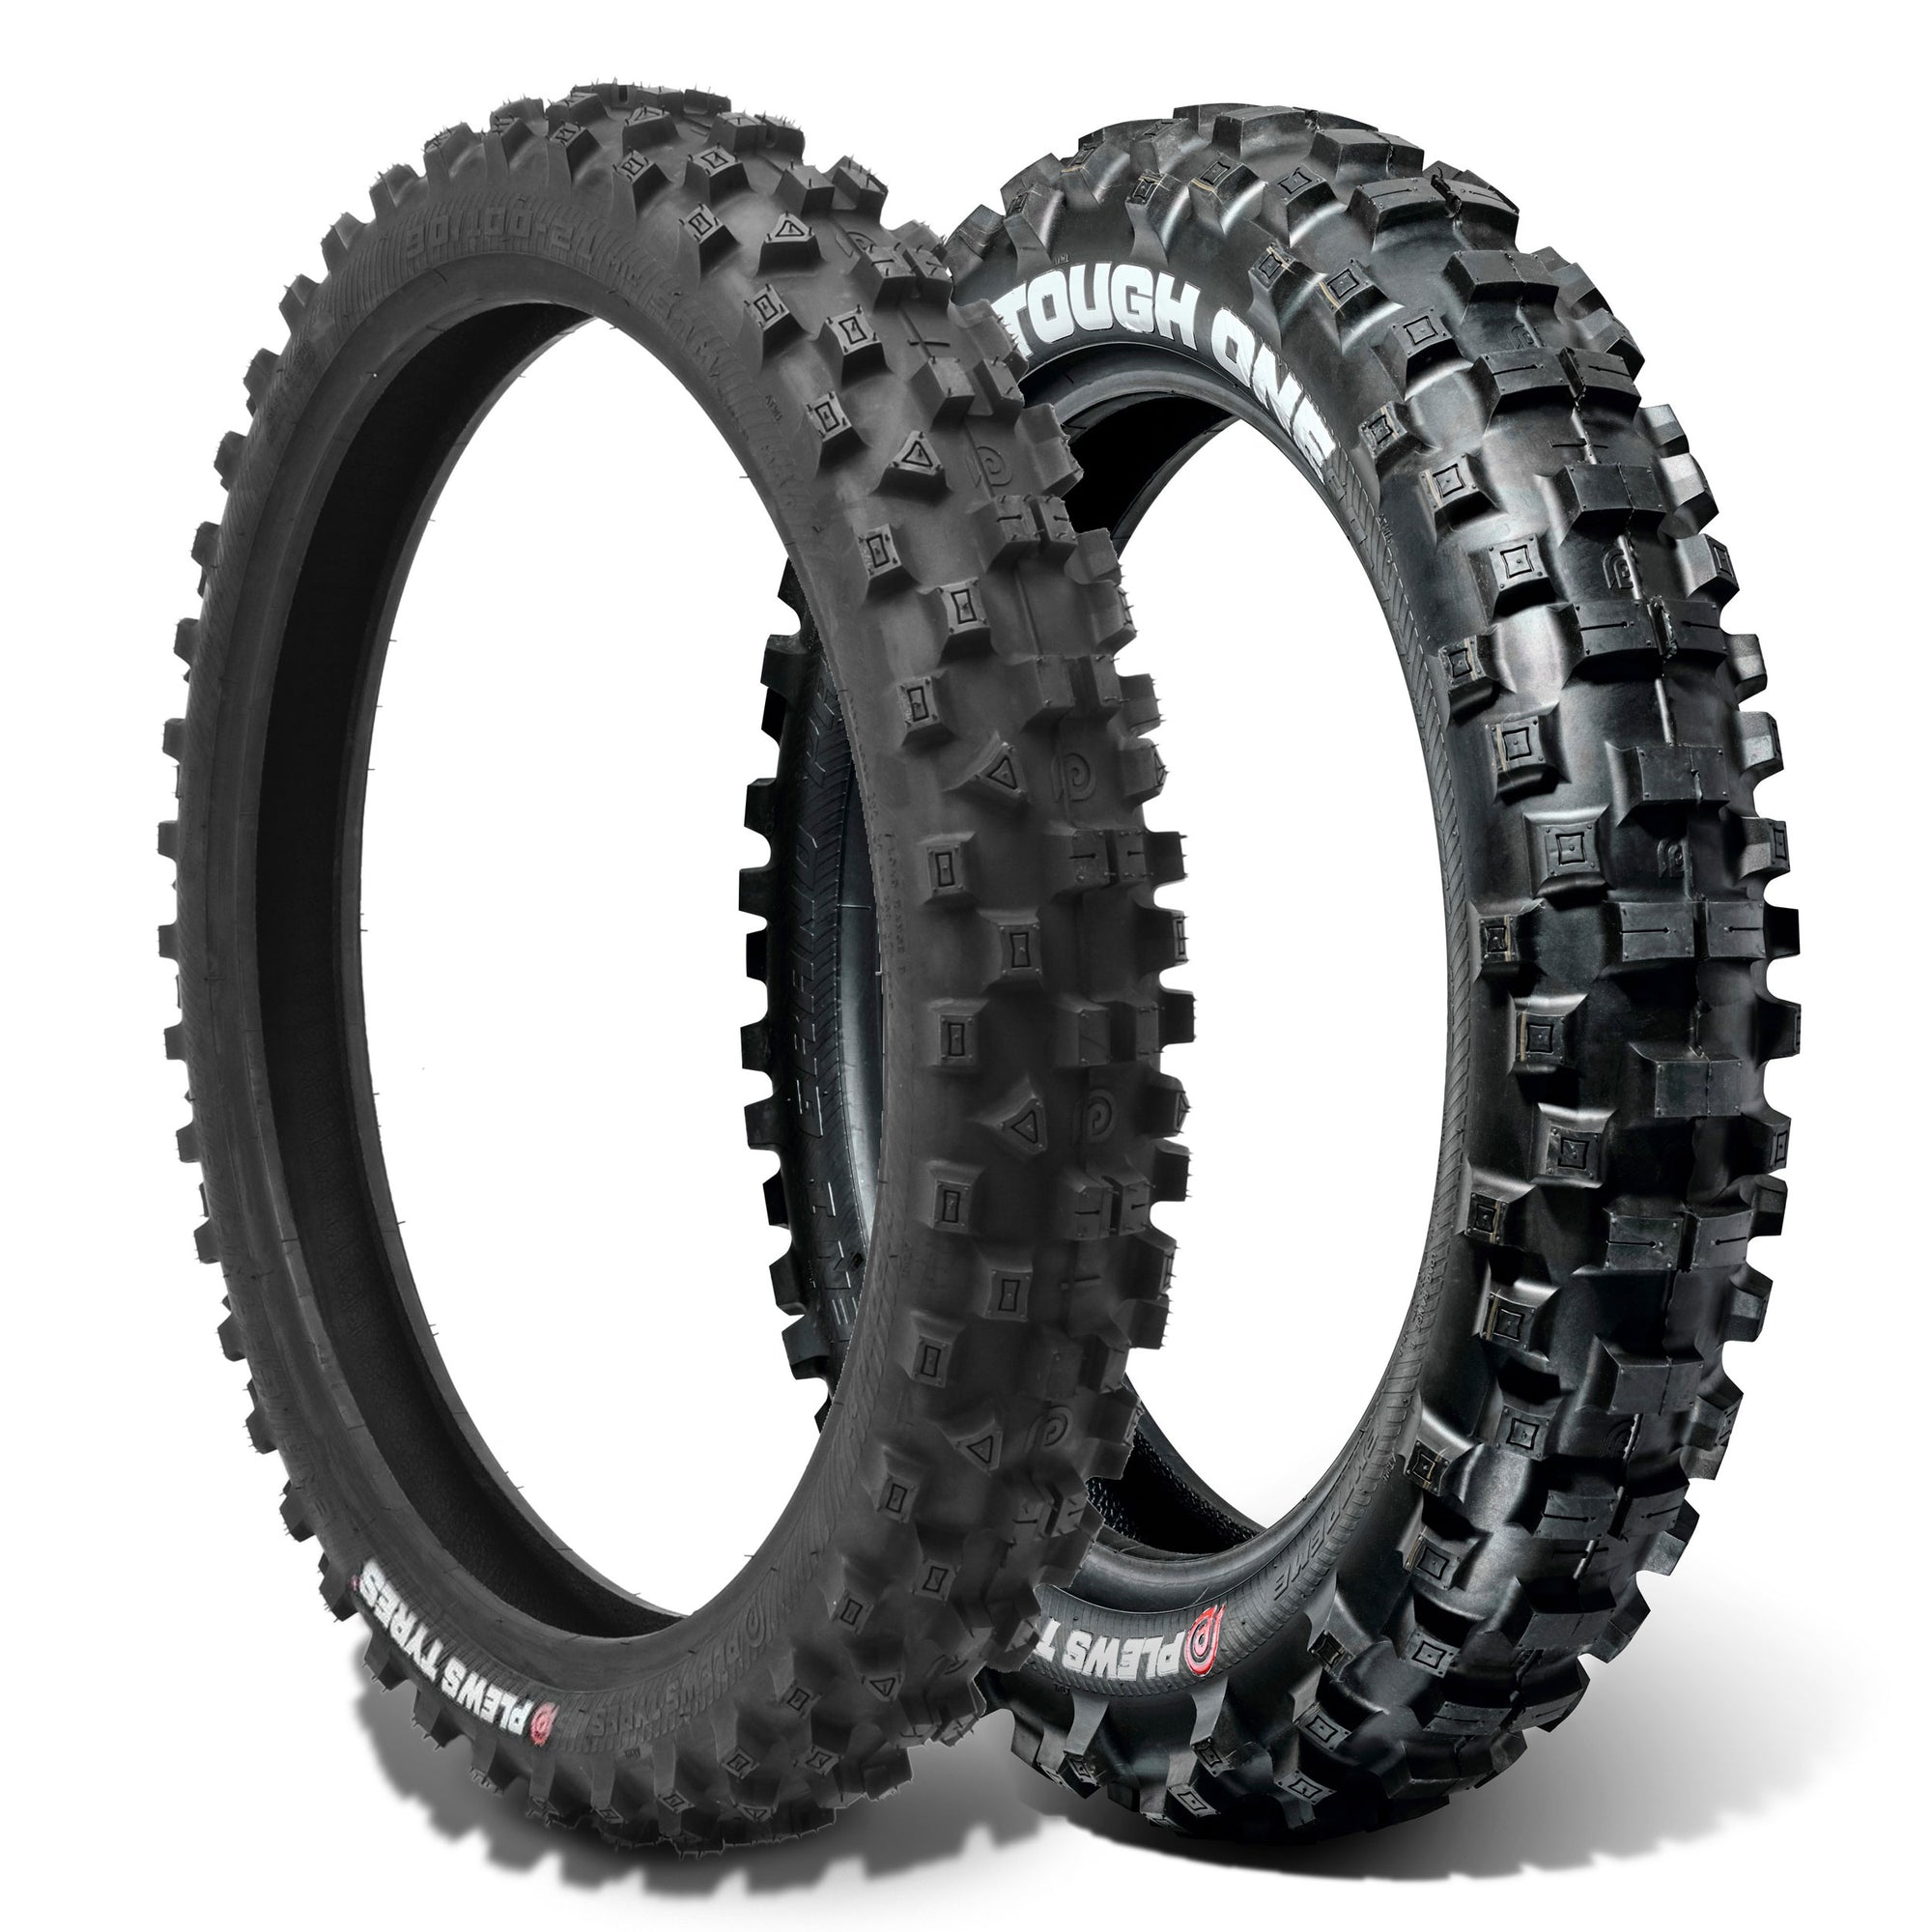 Plews Tyres | Enduro Set | EN1 THE TOUGH ONE Rear & EN1 GRAND PRIX Front Enduro Tire Bundle - 3/4 view